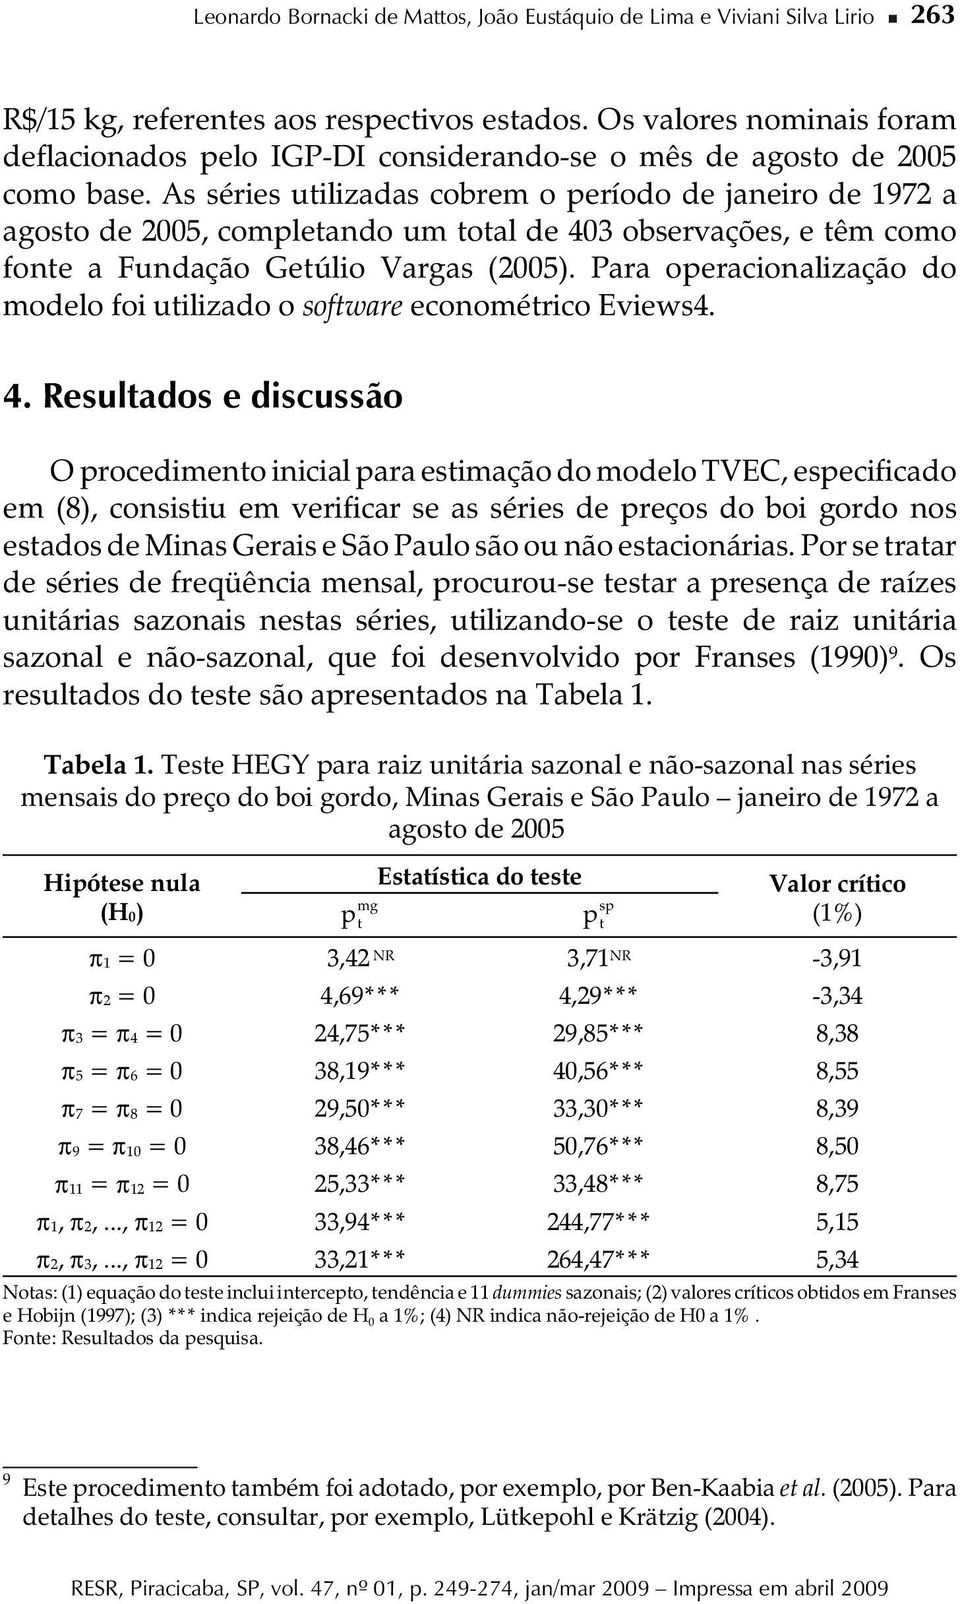 s séres utlzadas cobrem o período de janero de 1972 a agosto de 2005, completando um total de 403 observações, e têm como fonte a Fundação Getúlo Vargas (2005).